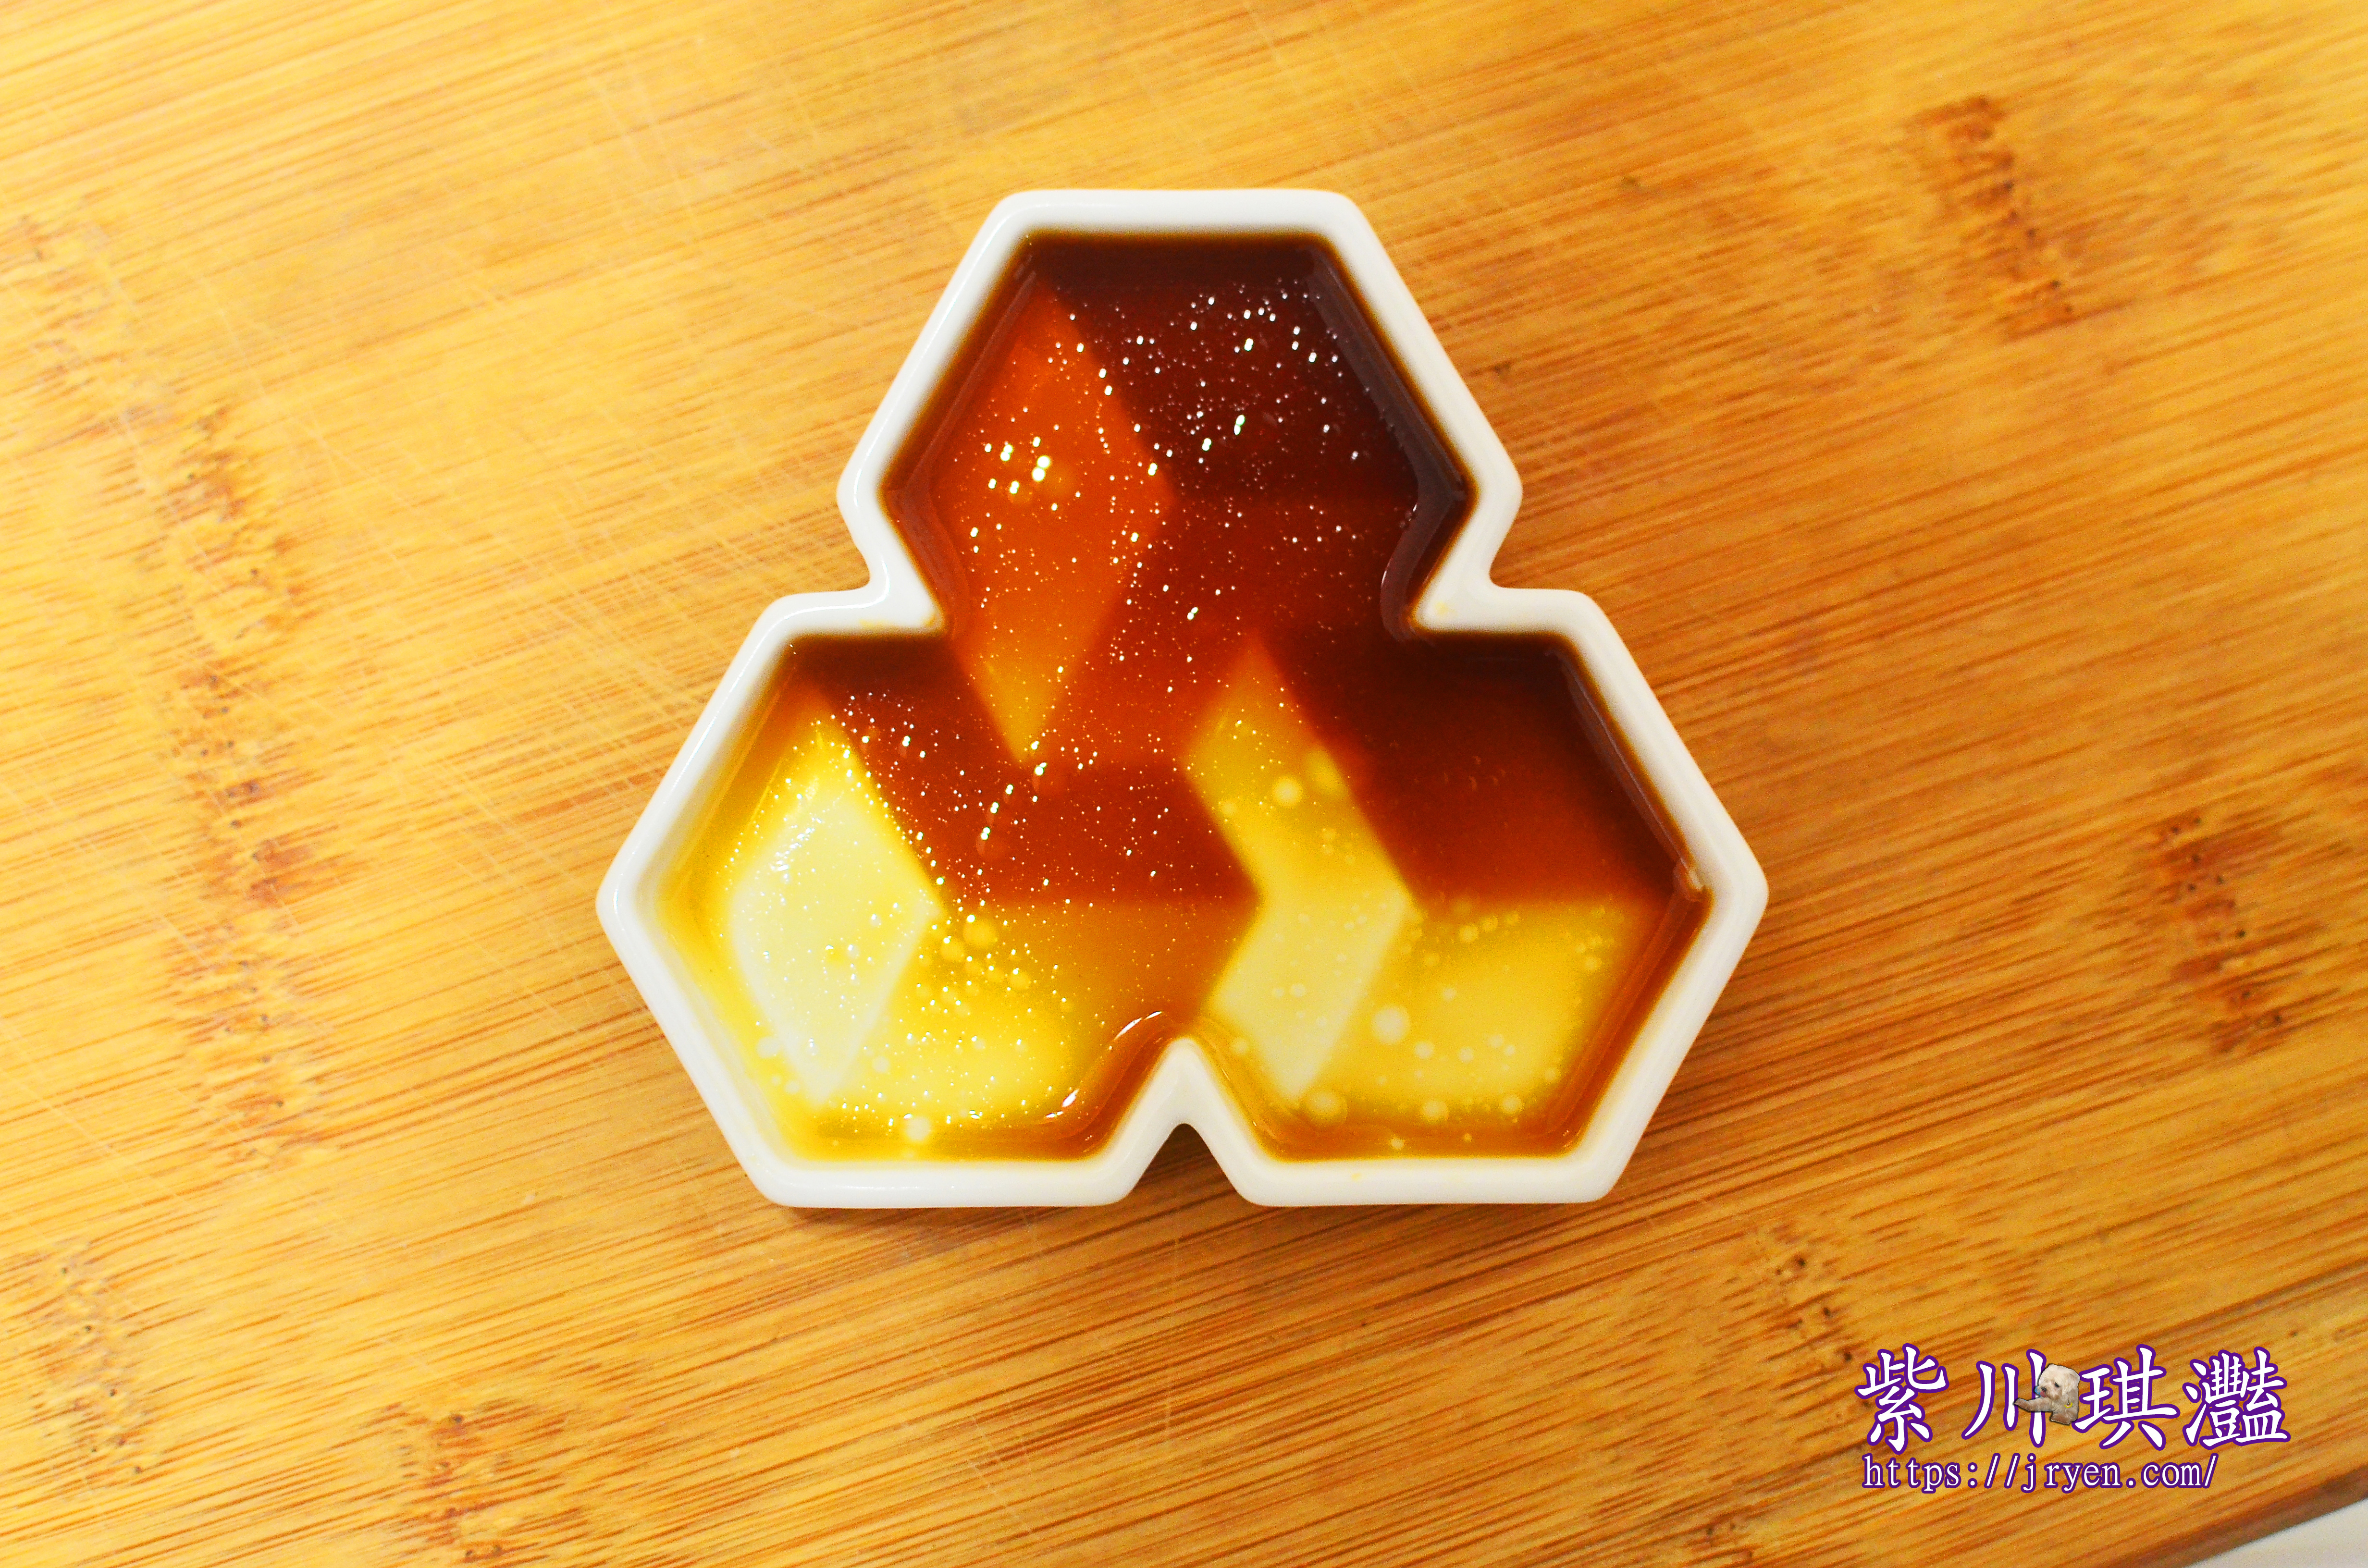 生活美學中的匠心文藝 myinnos賣創意「和風3D立體陶瓷醬油碟」廚房藝品讓生活不在單調